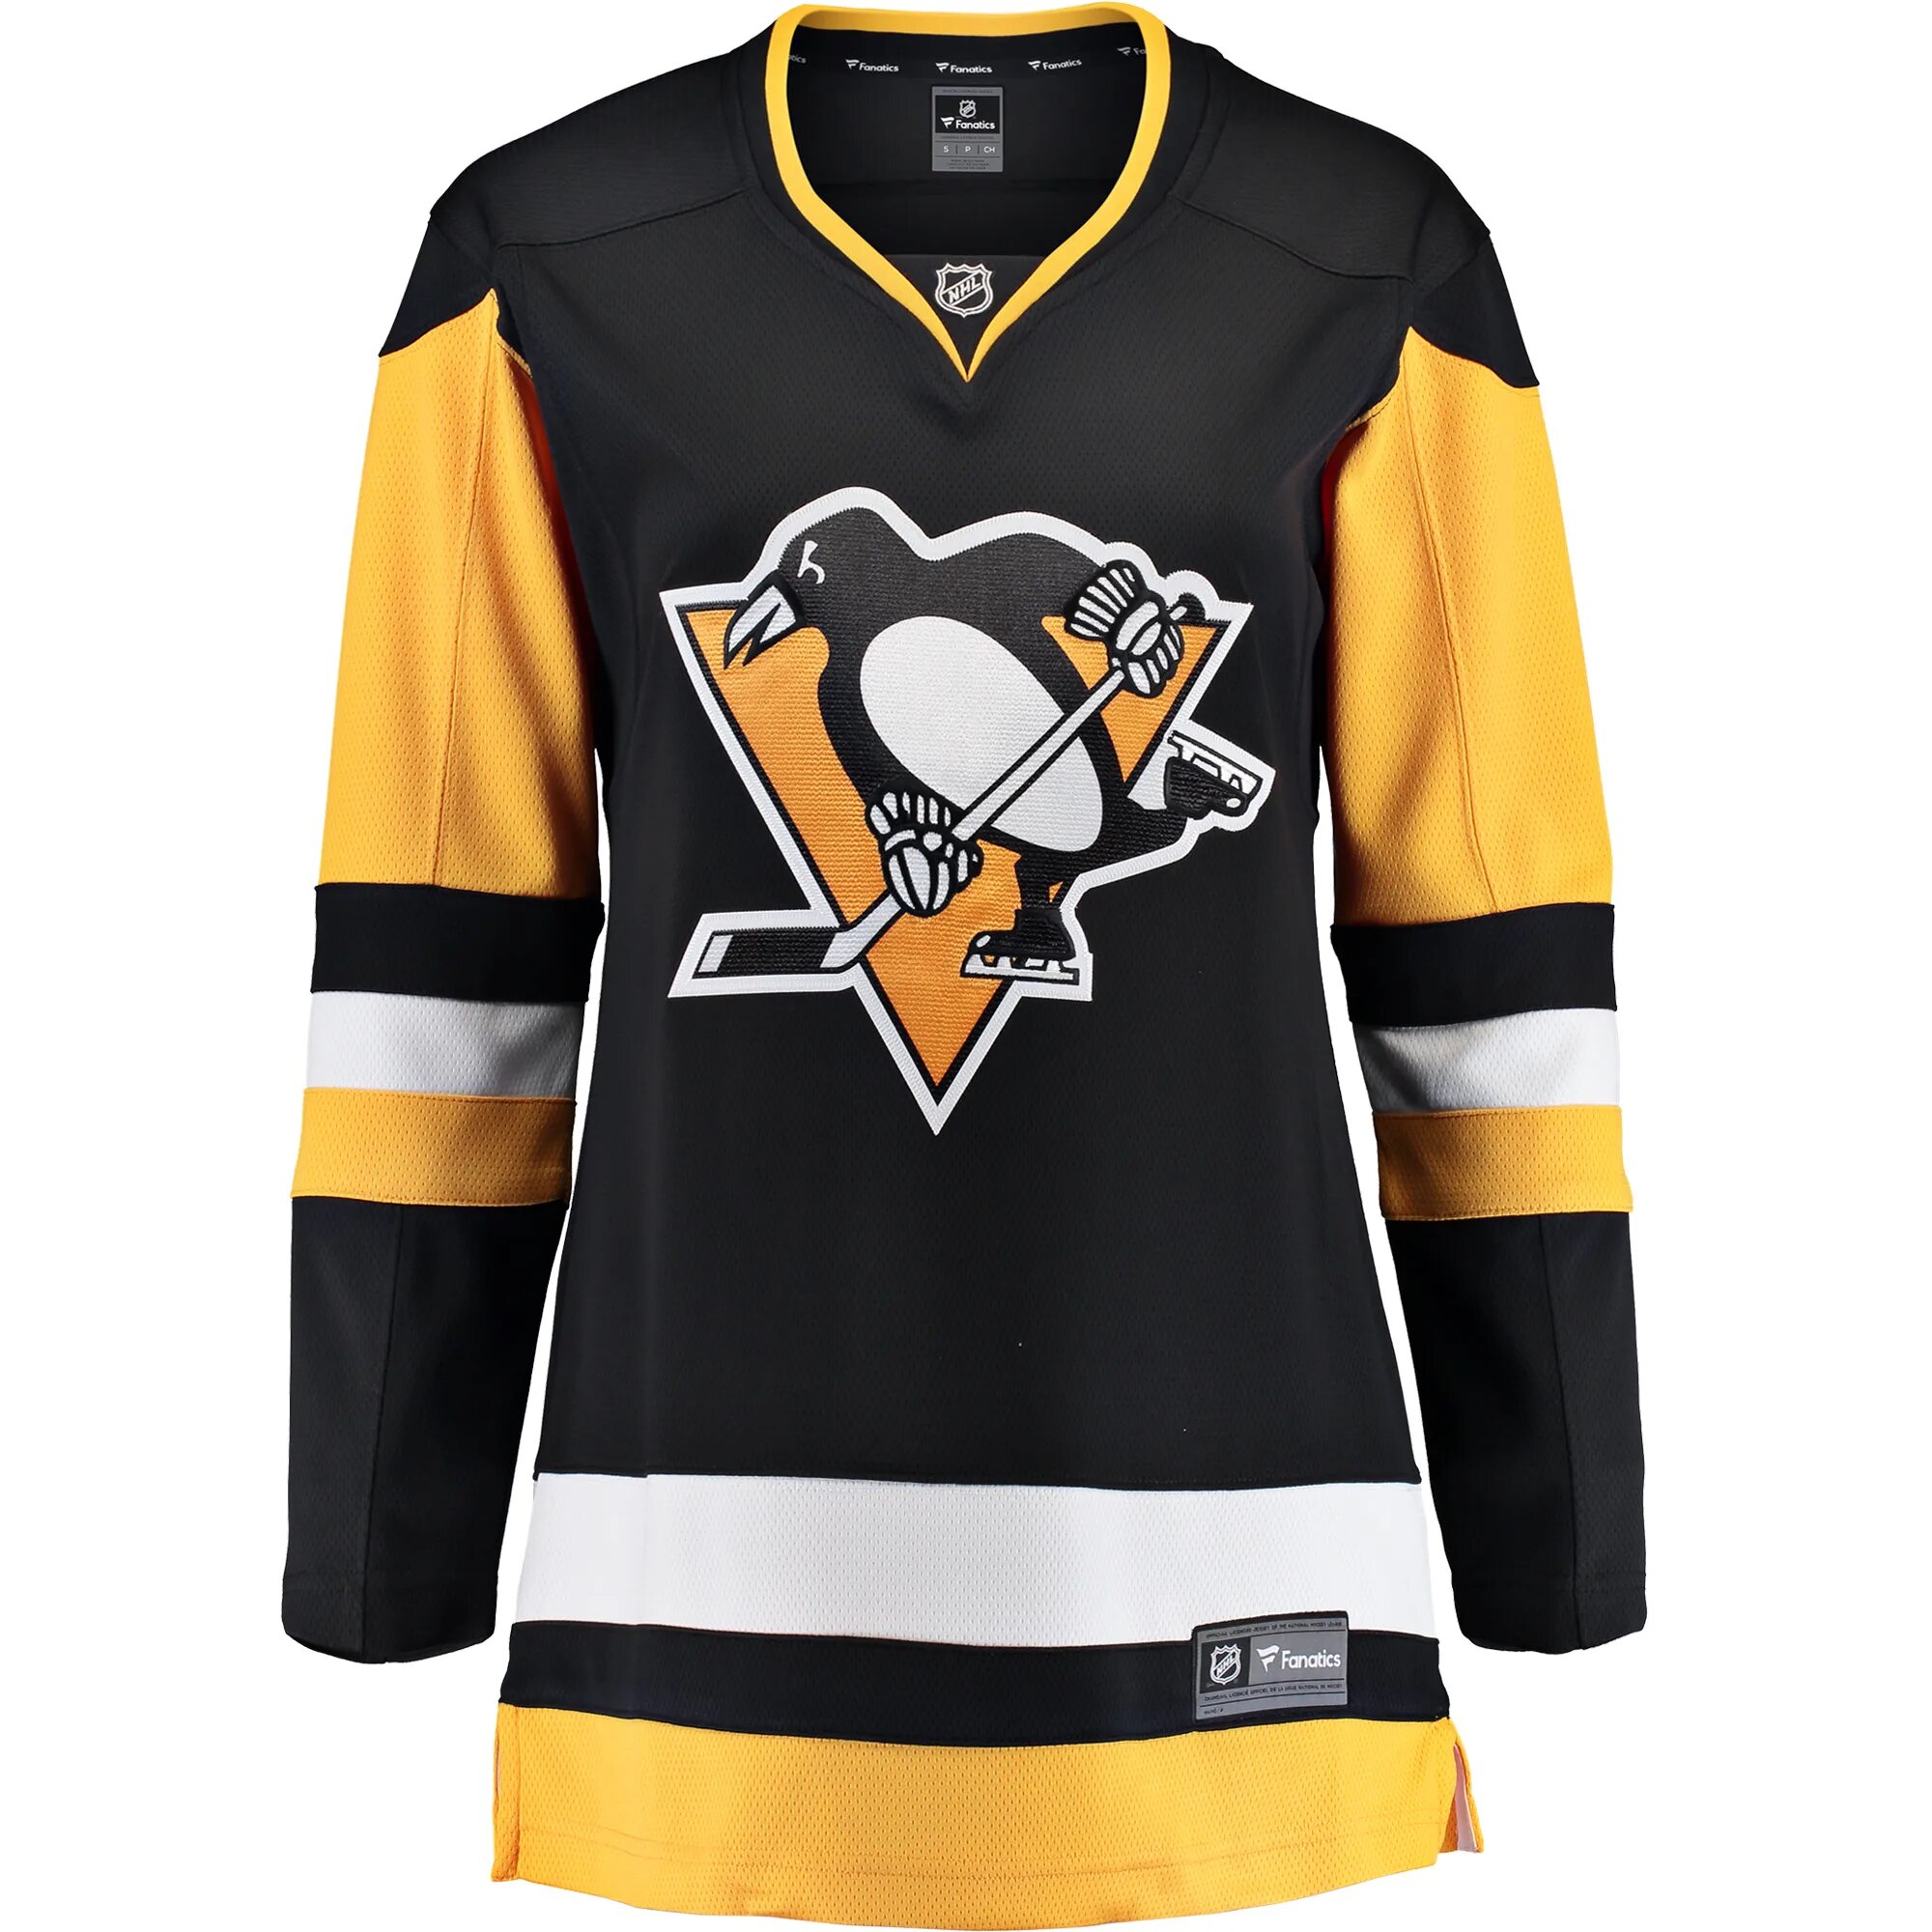 Джерси питтсбург пингвинз. NHL Pittsburgh Penguins. Свитер Питтсбург Пингвинз. Adidas Pittsburgh Penguins.